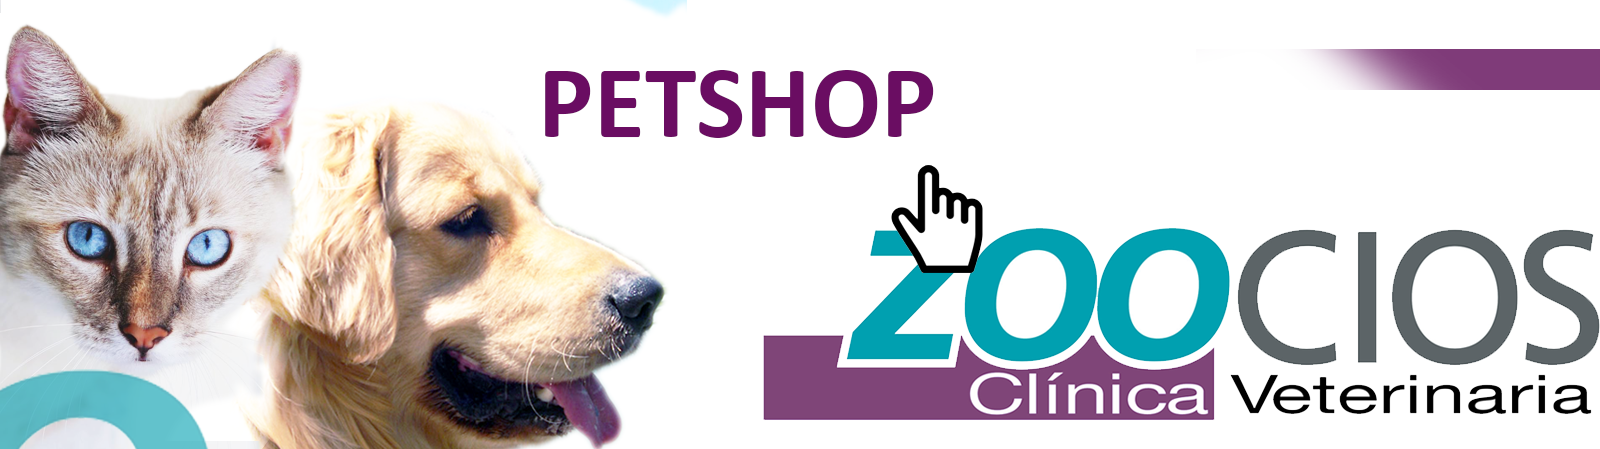 tiendas zoocios pet shop